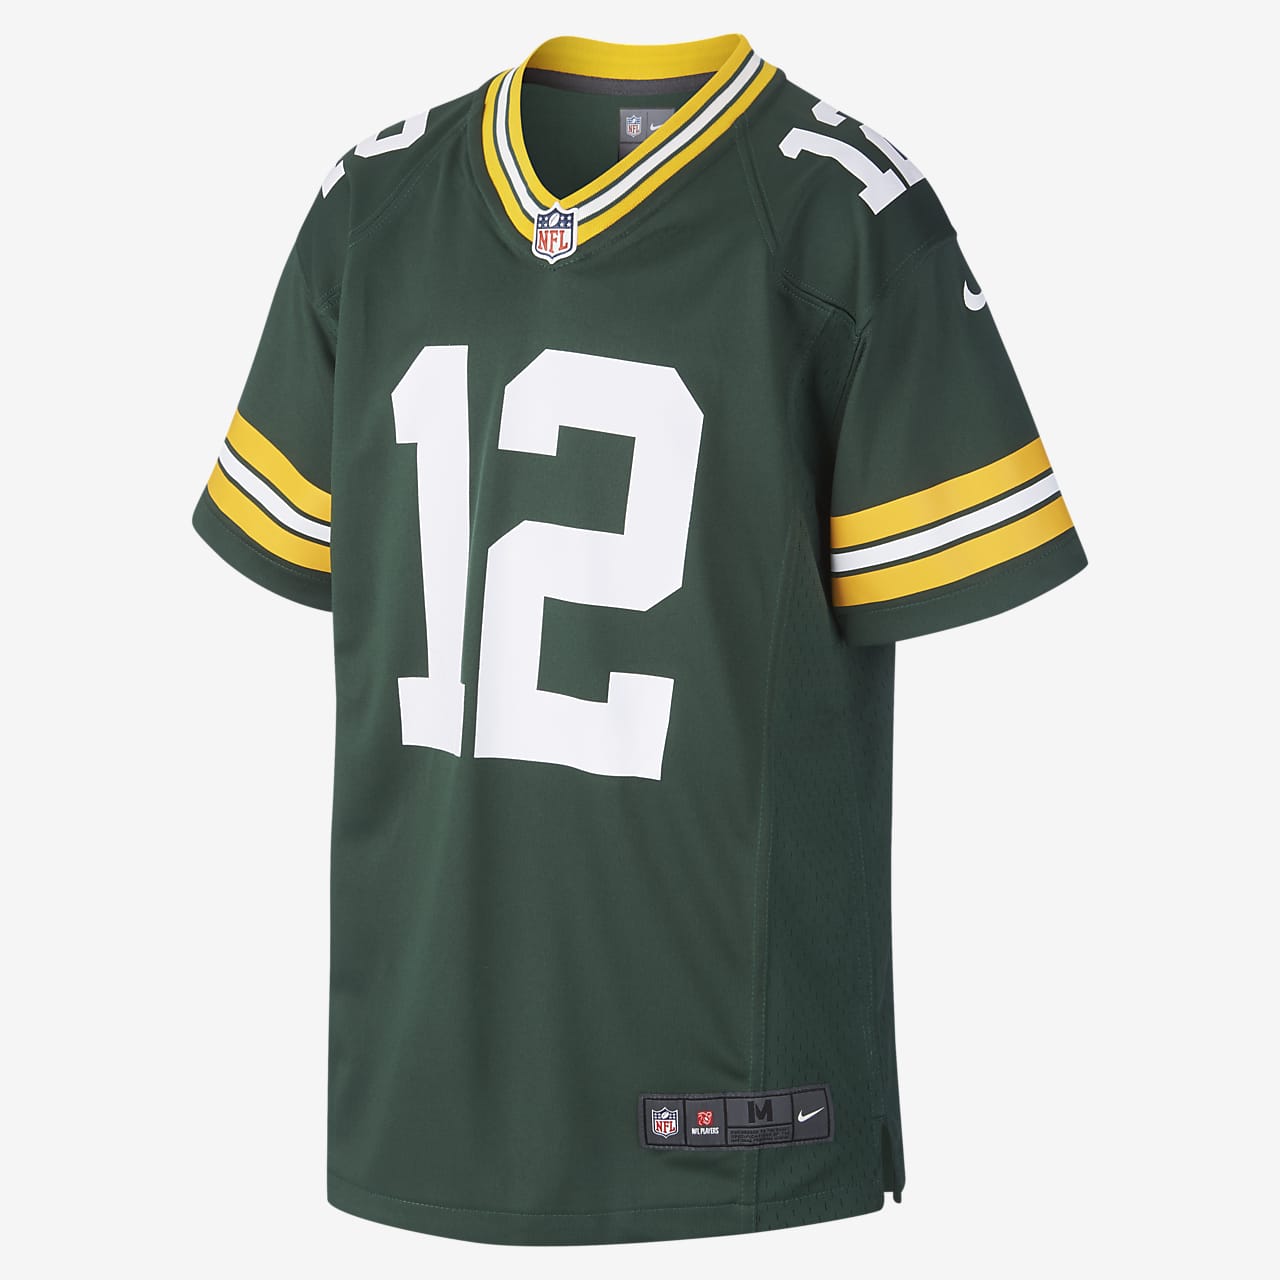 NFL Green Bay Packers (Aaron Rodgers) Wedstrijdjersey American footballjersey voor heren